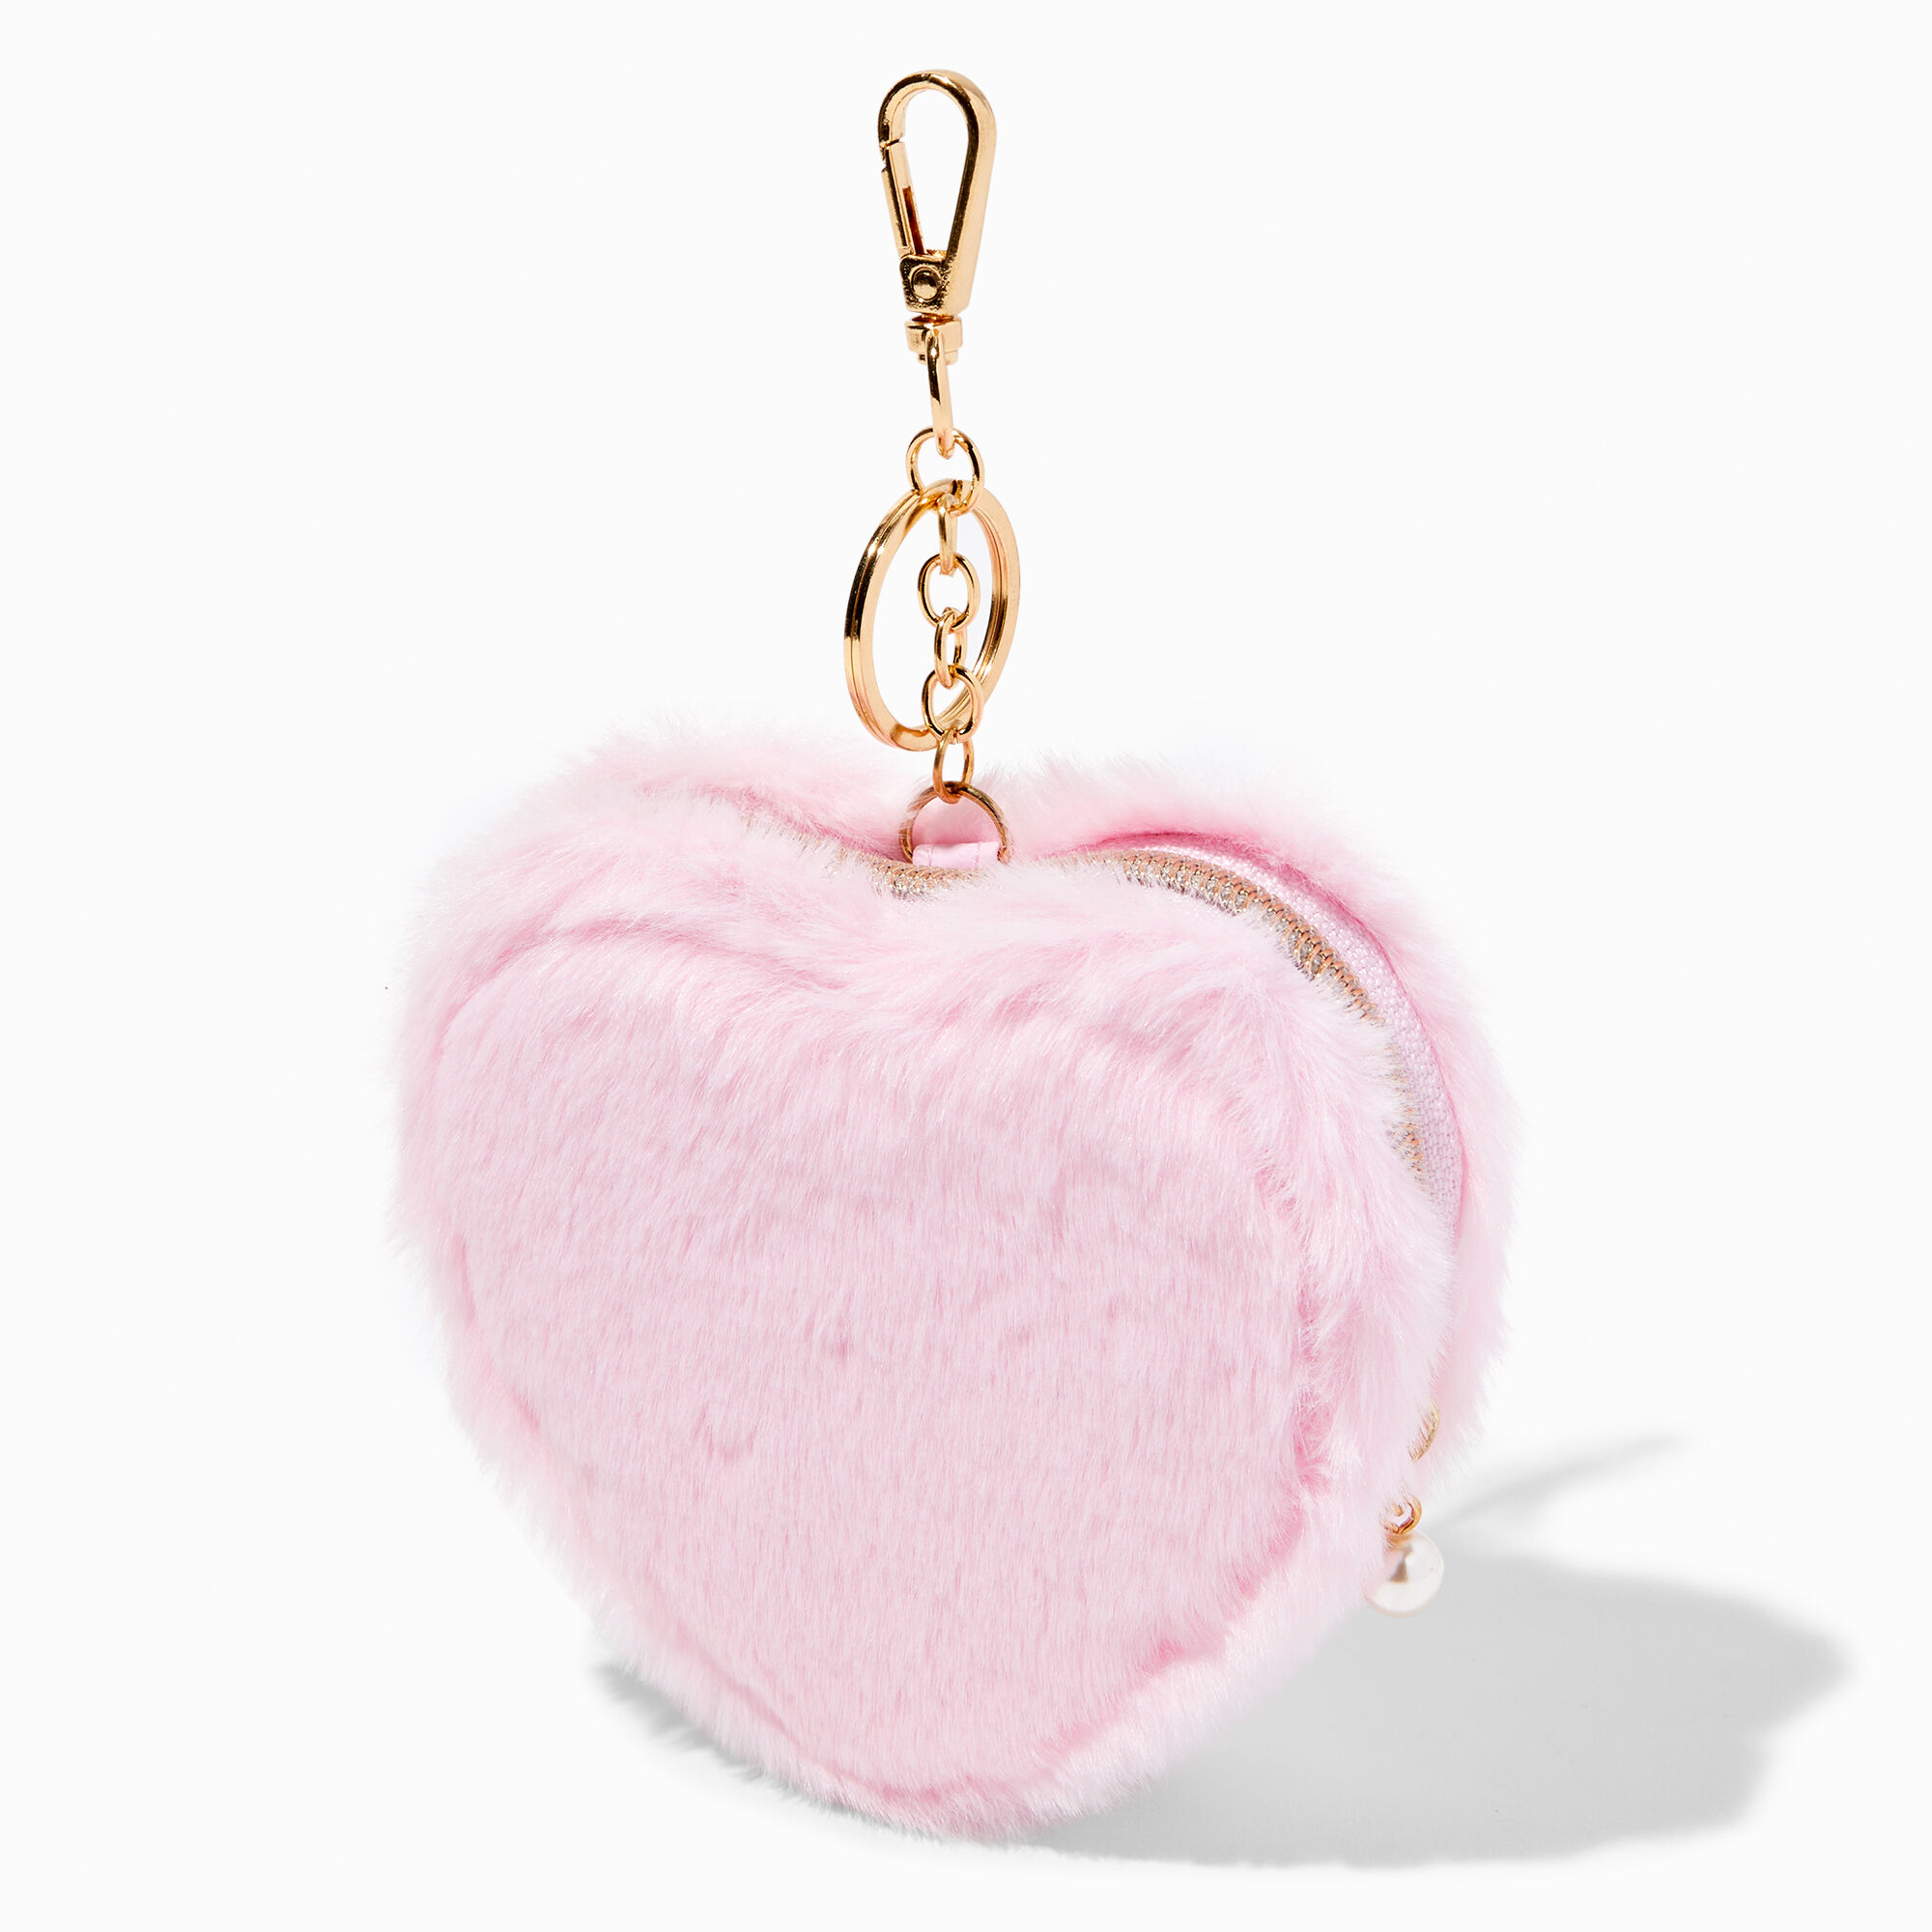 Victoria's Secret Love Pink Heart Coin Purse HTF RARE